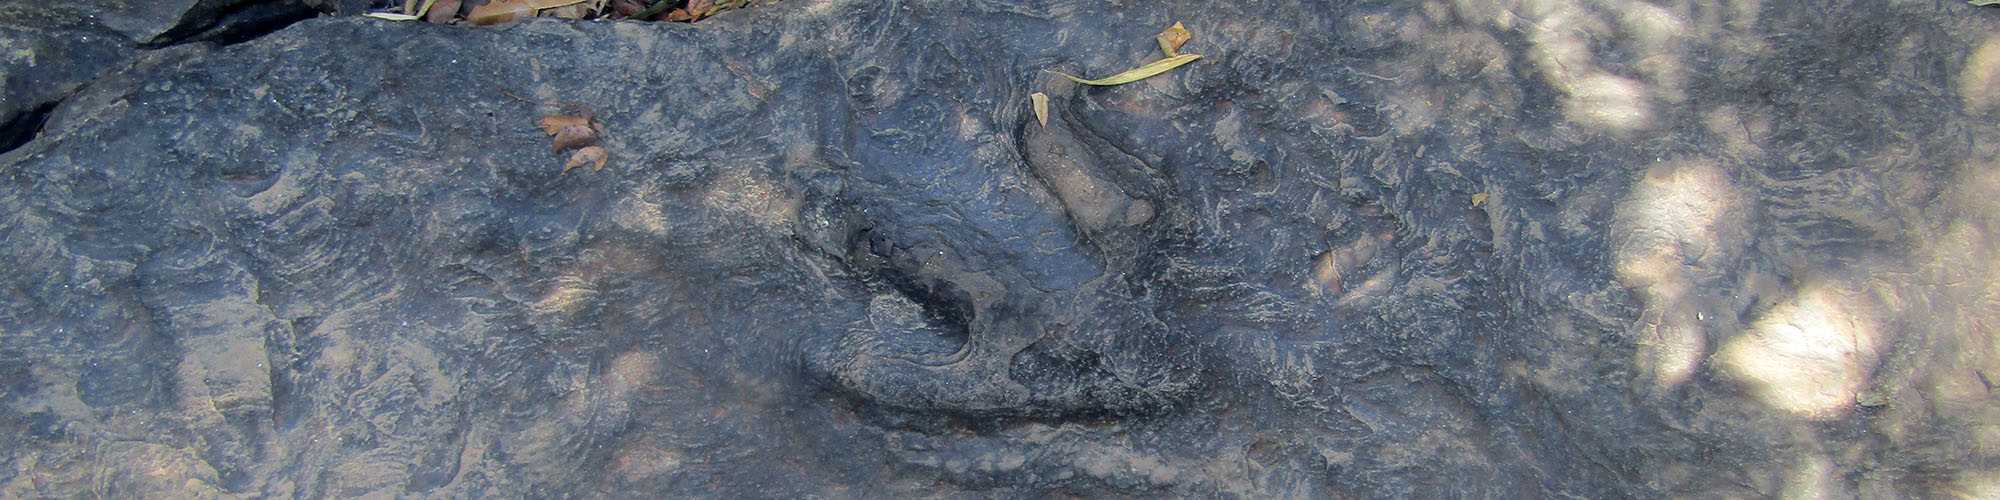 Dinosaur Footprint at Phu Faek Forest Park, Na Khu District, Kalasin Province, Buriram